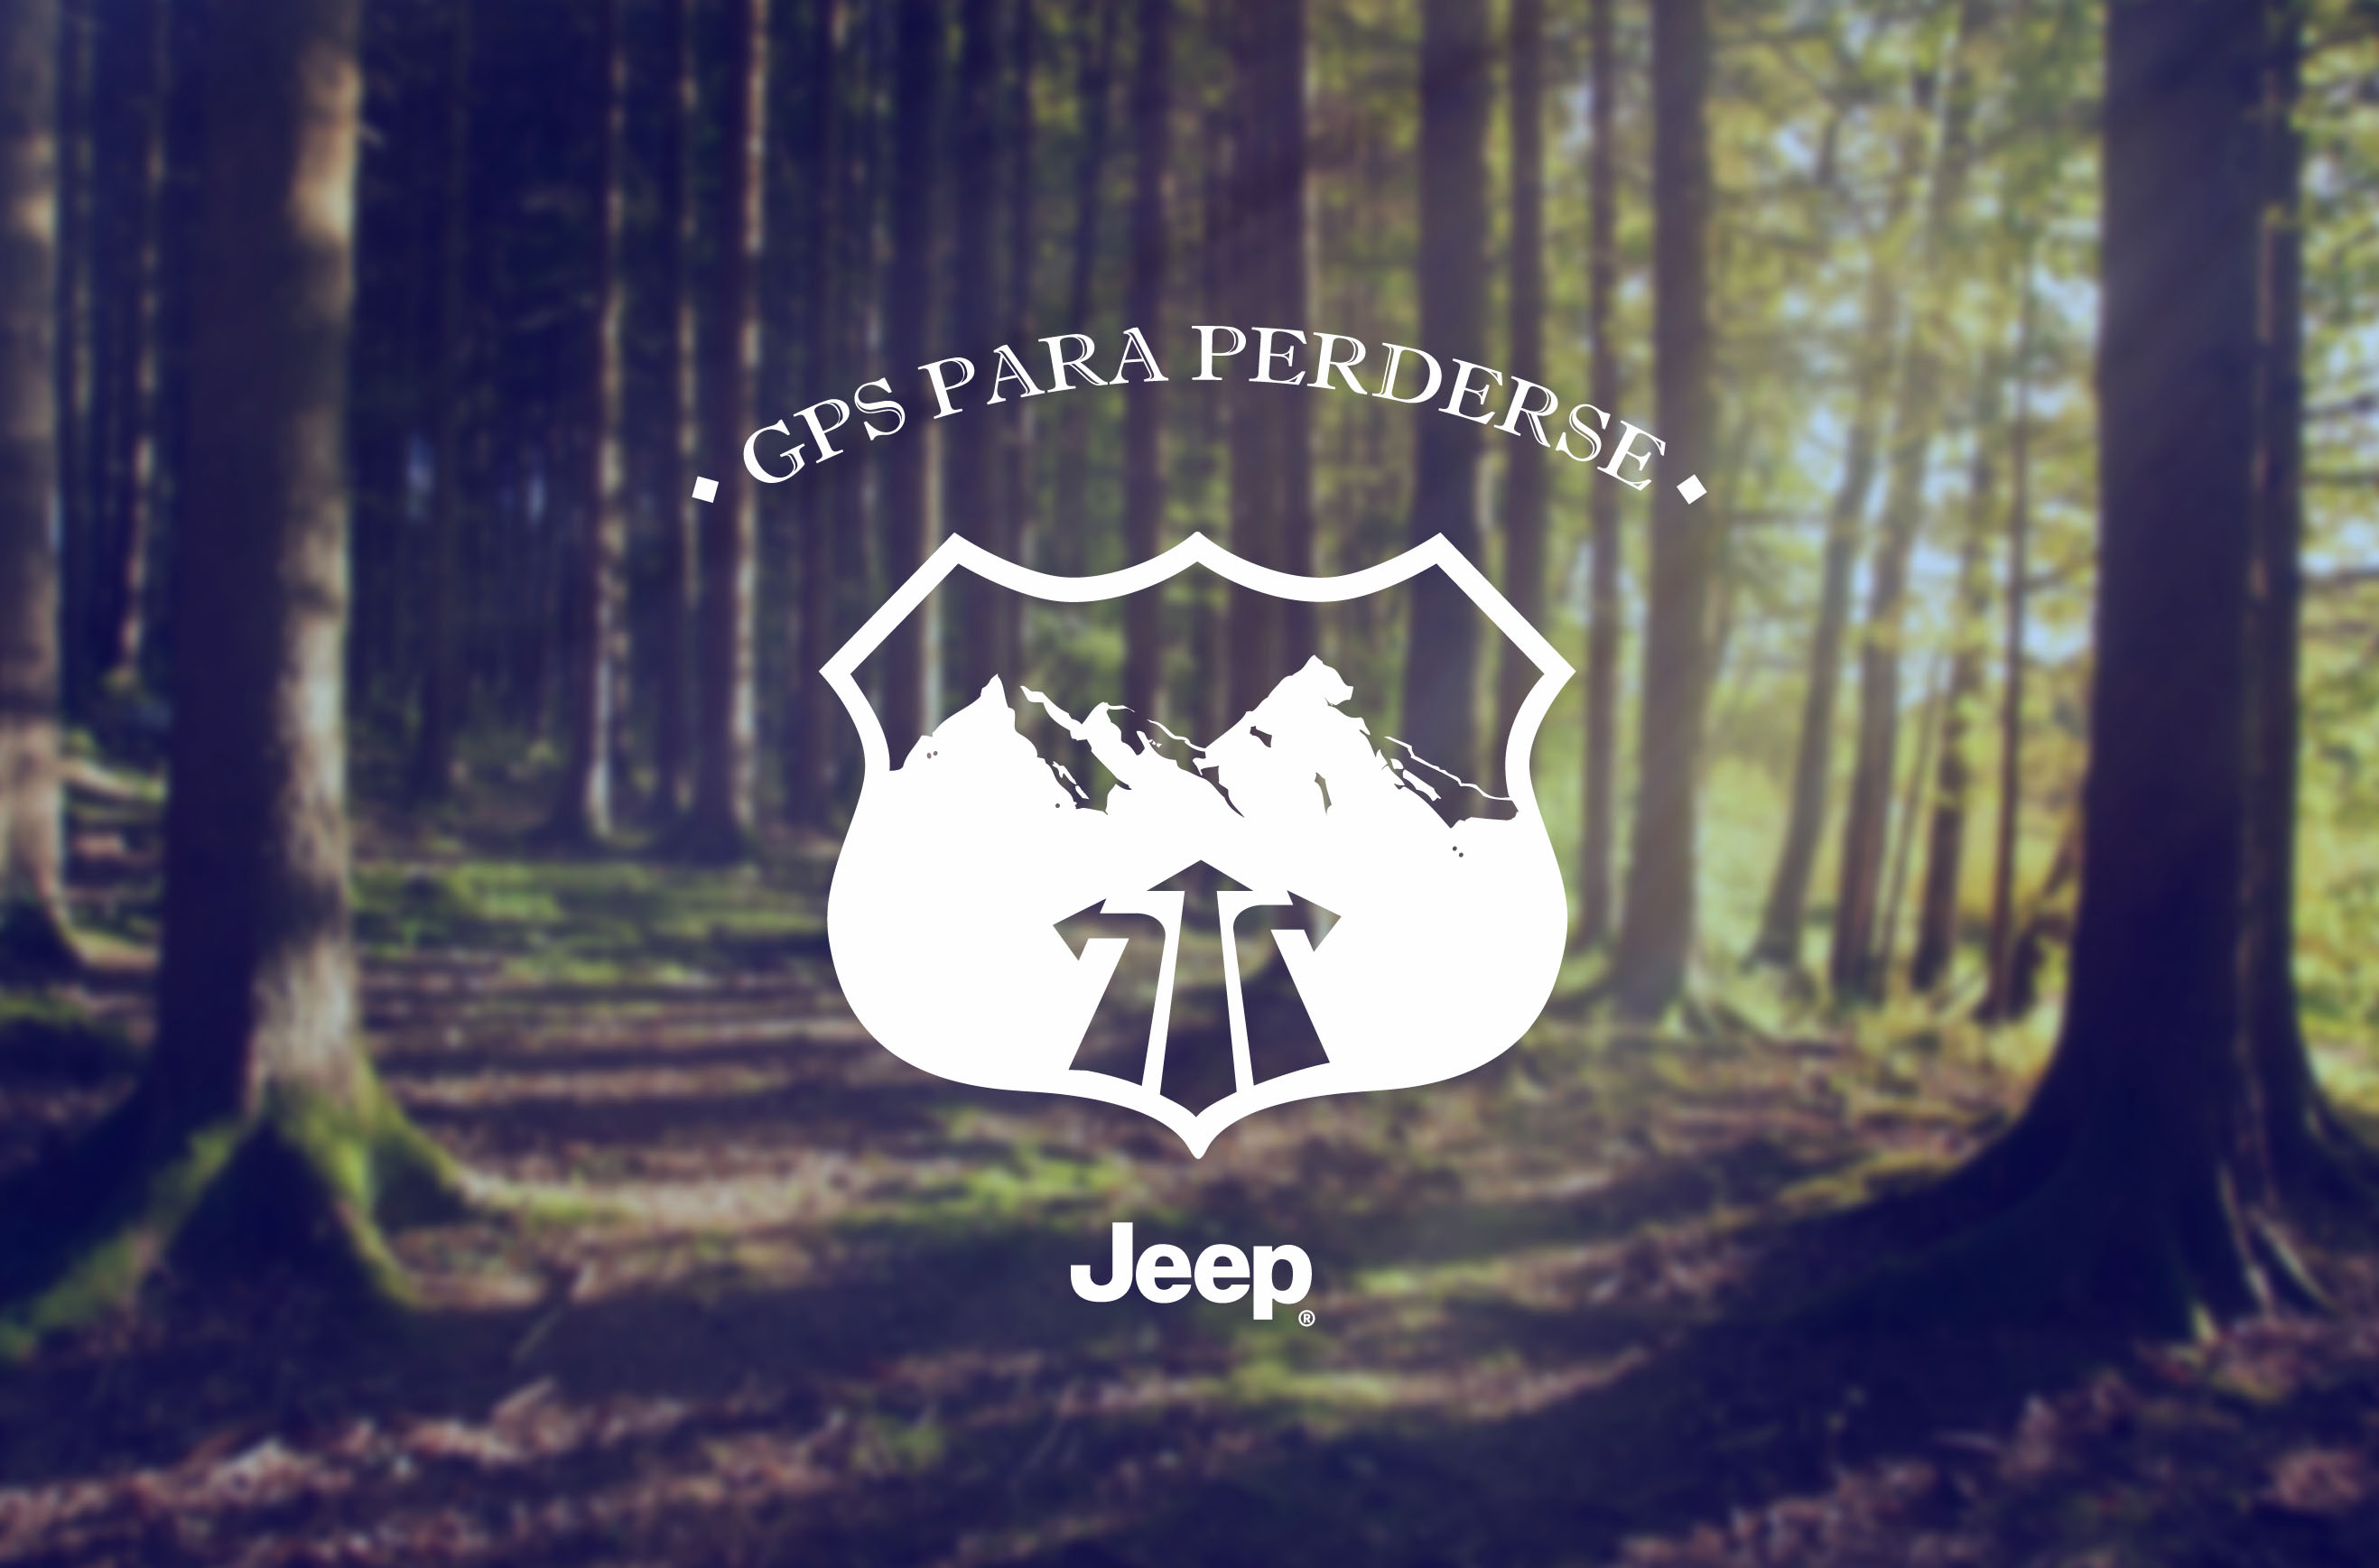 Preestreno de Leo Burnett Argentina para Jeep